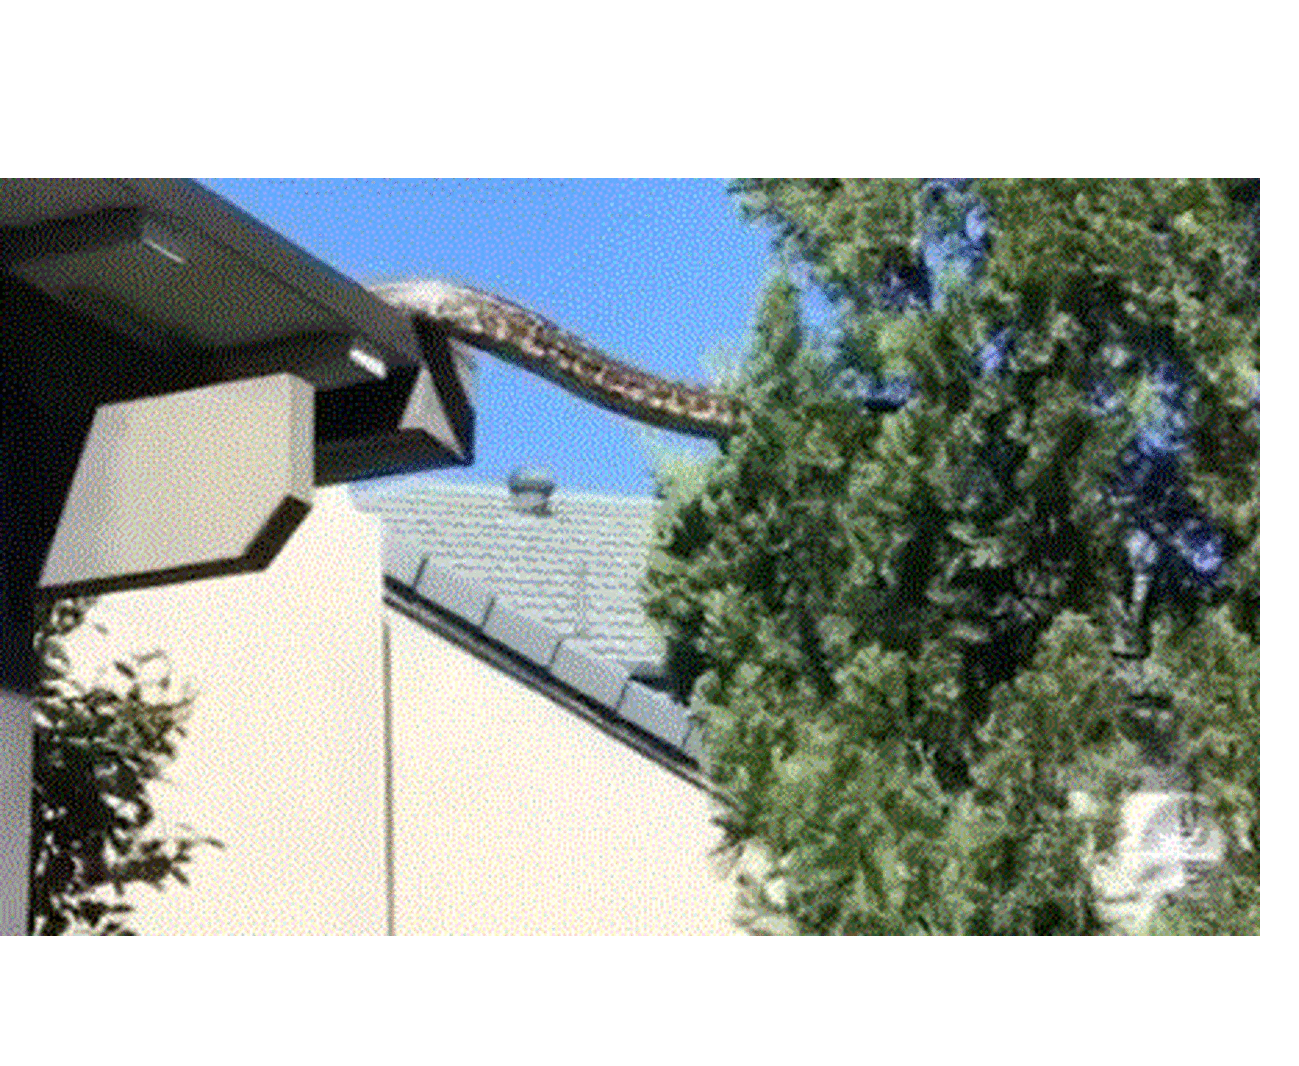 Αυστραλία: Πύθωνας 5 μέτρων κάνει... βόλτα στη στέγη σπιτιού - Το viral βίντεο που κόβει την ανάσα